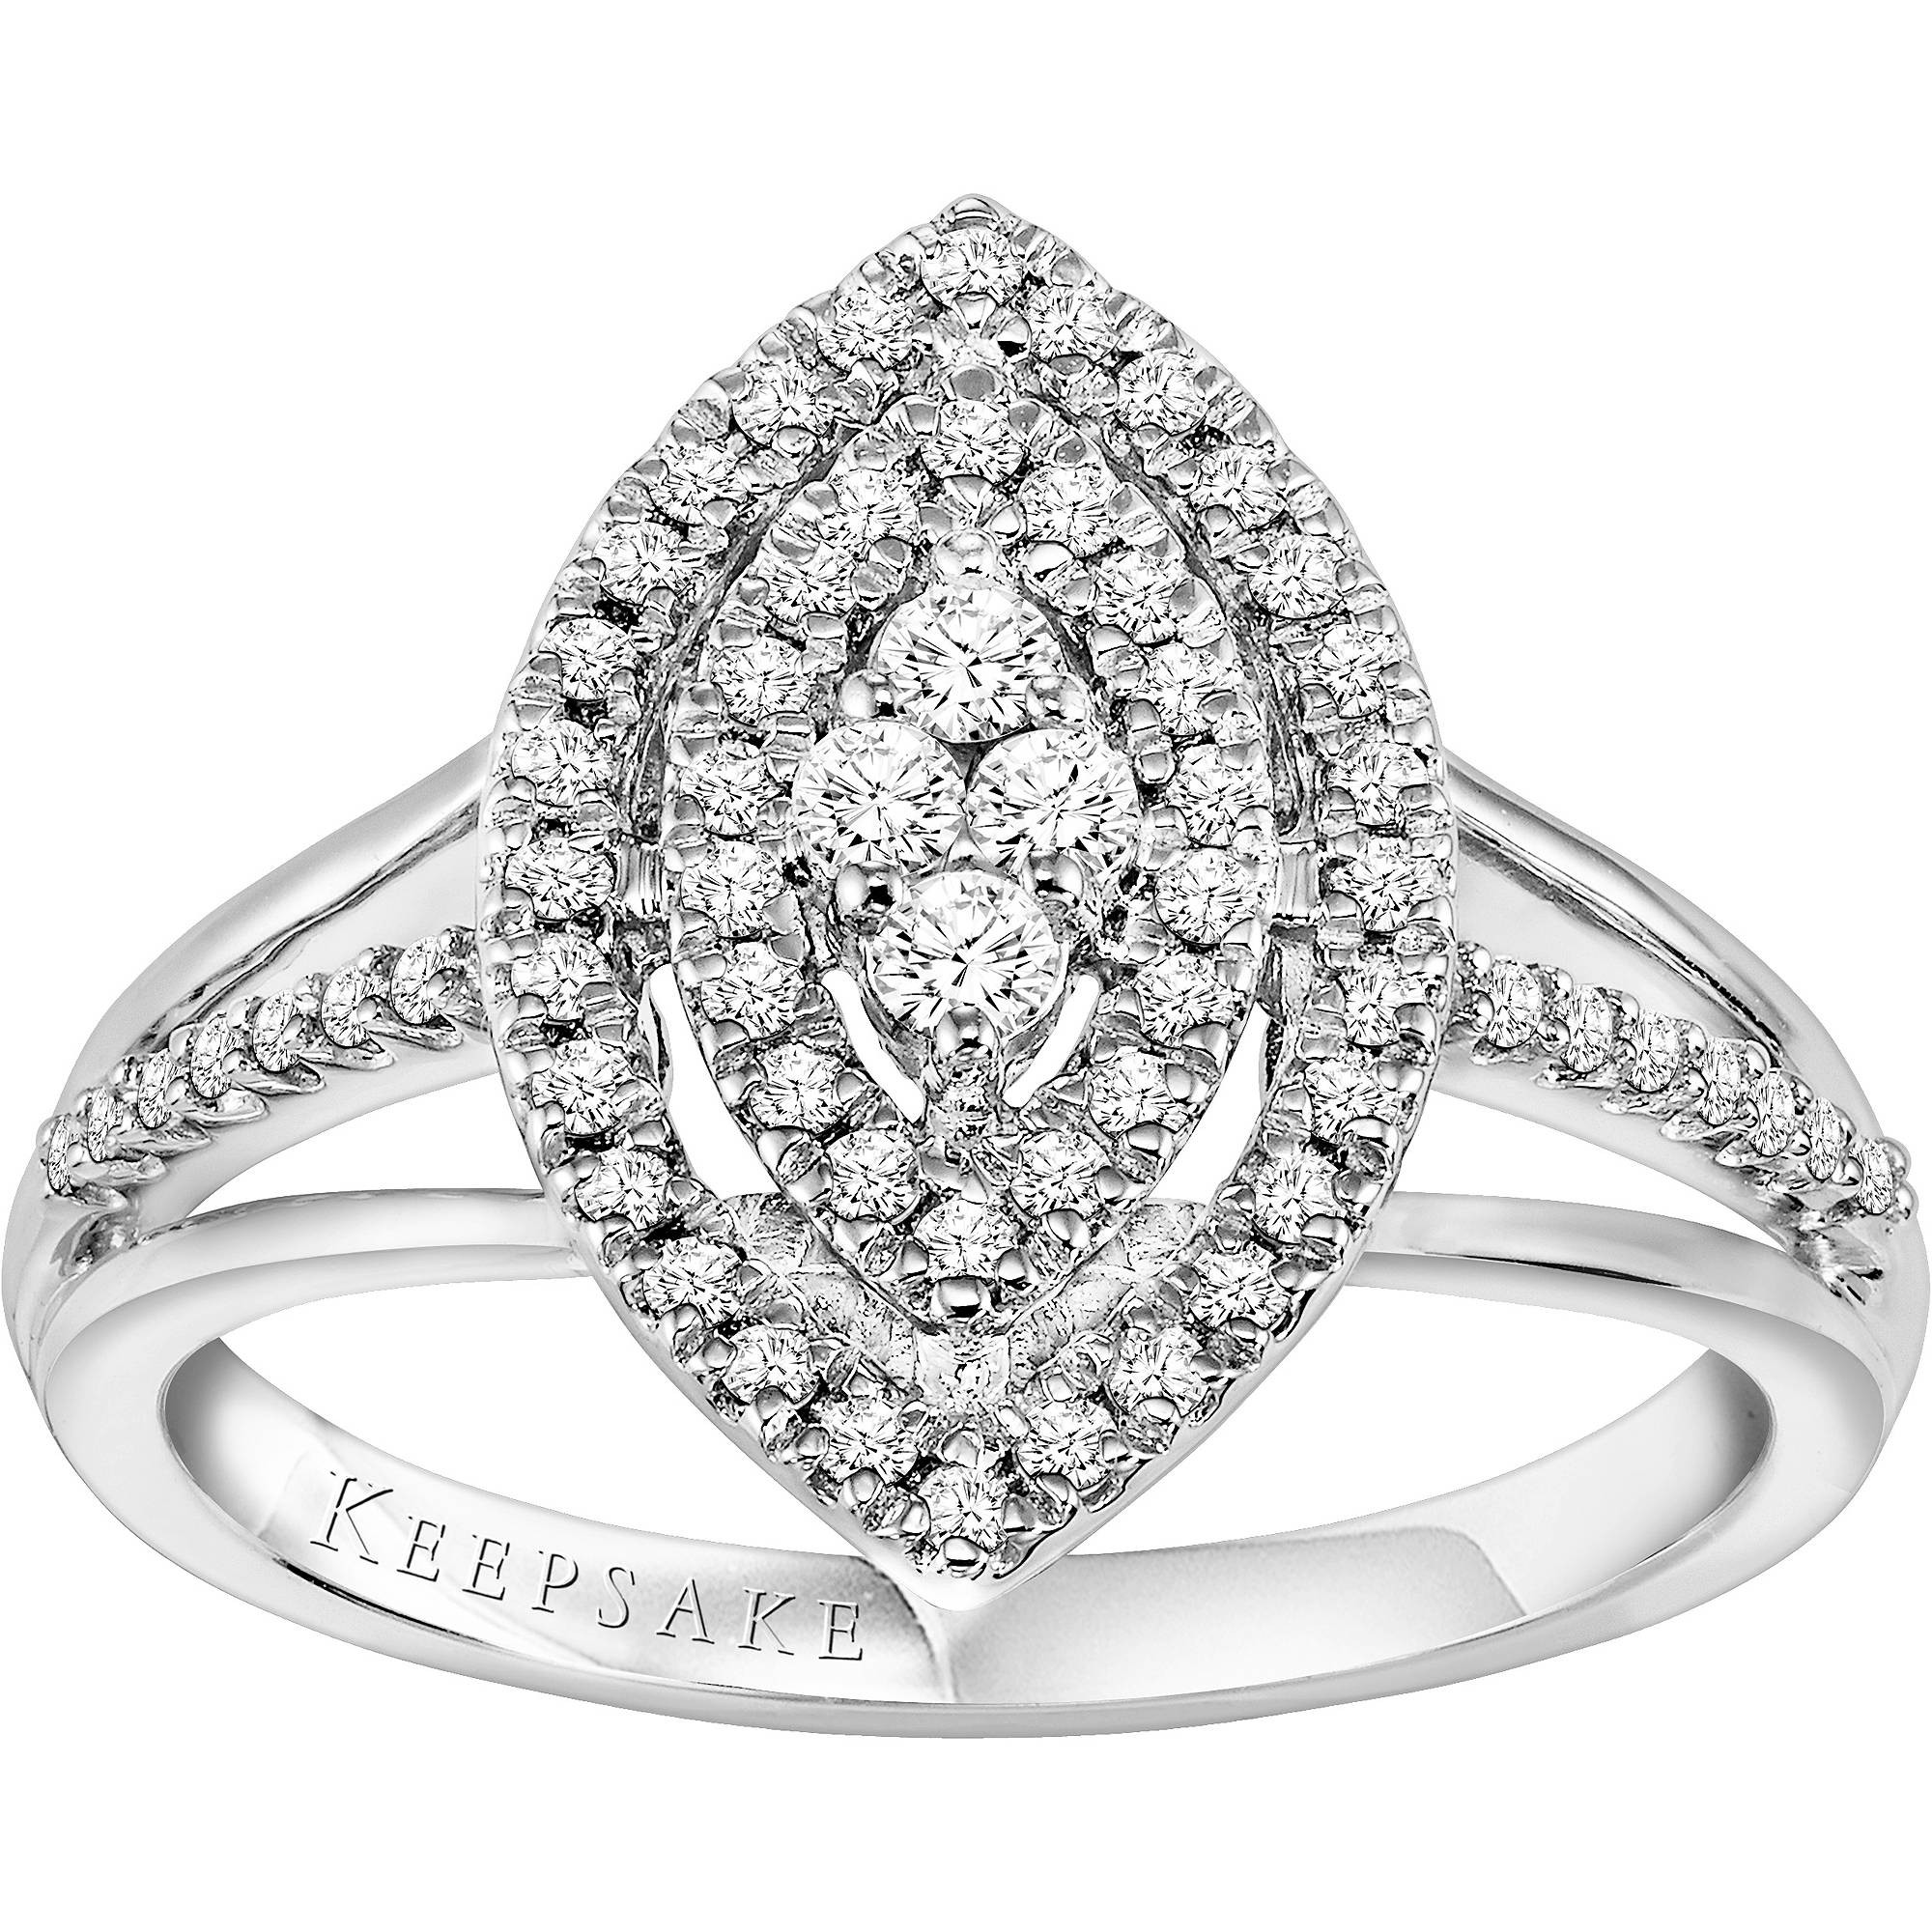 Walmart Diamond Wedding Rings
 15 Best of Walmart Keepsake Engagement Rings